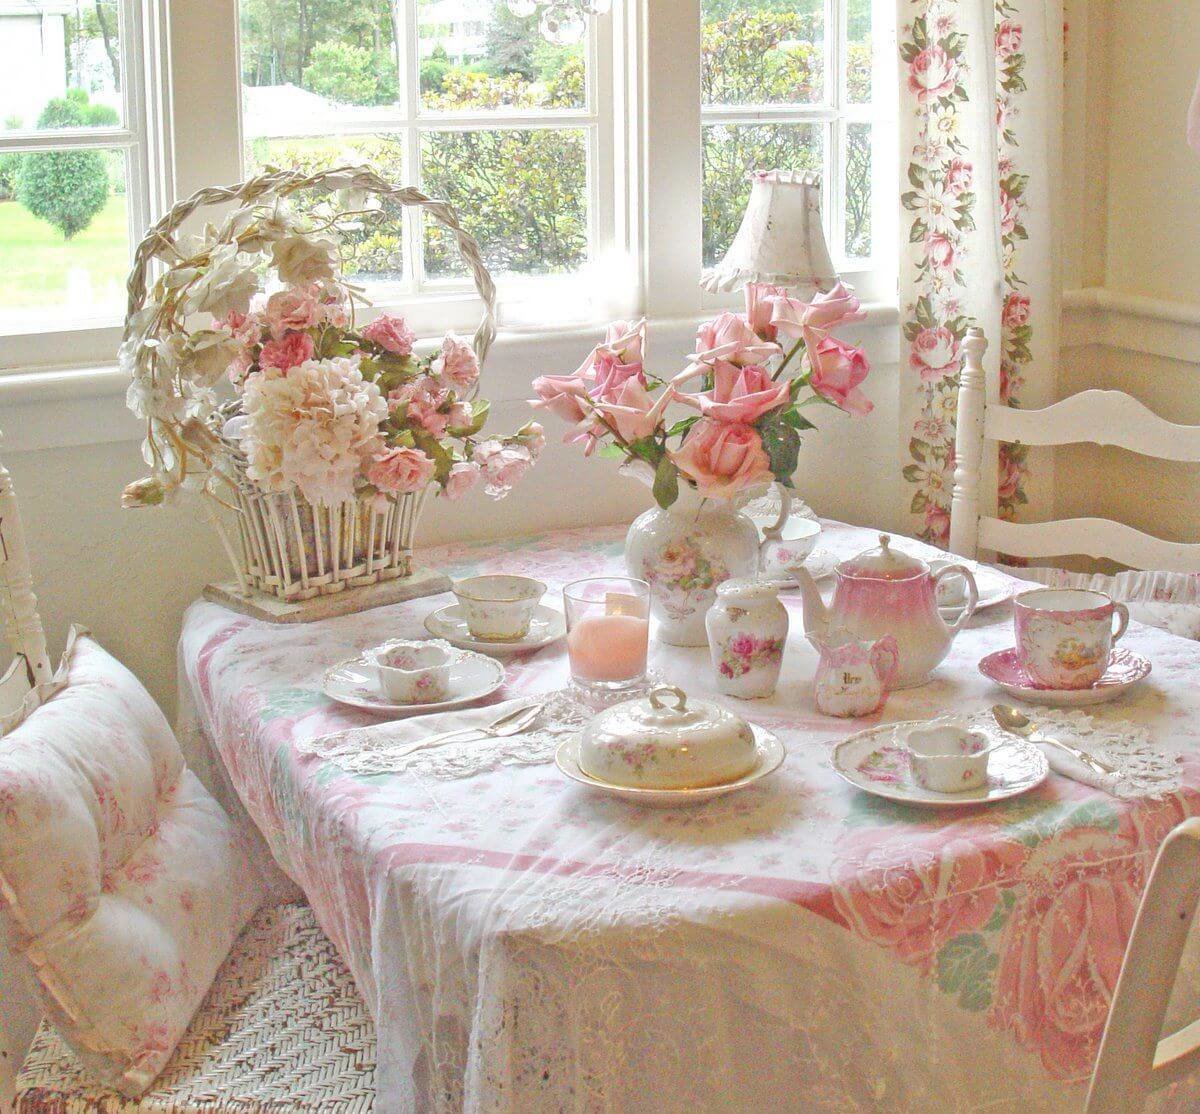 Очаровательный текстиль в розовых оттенках